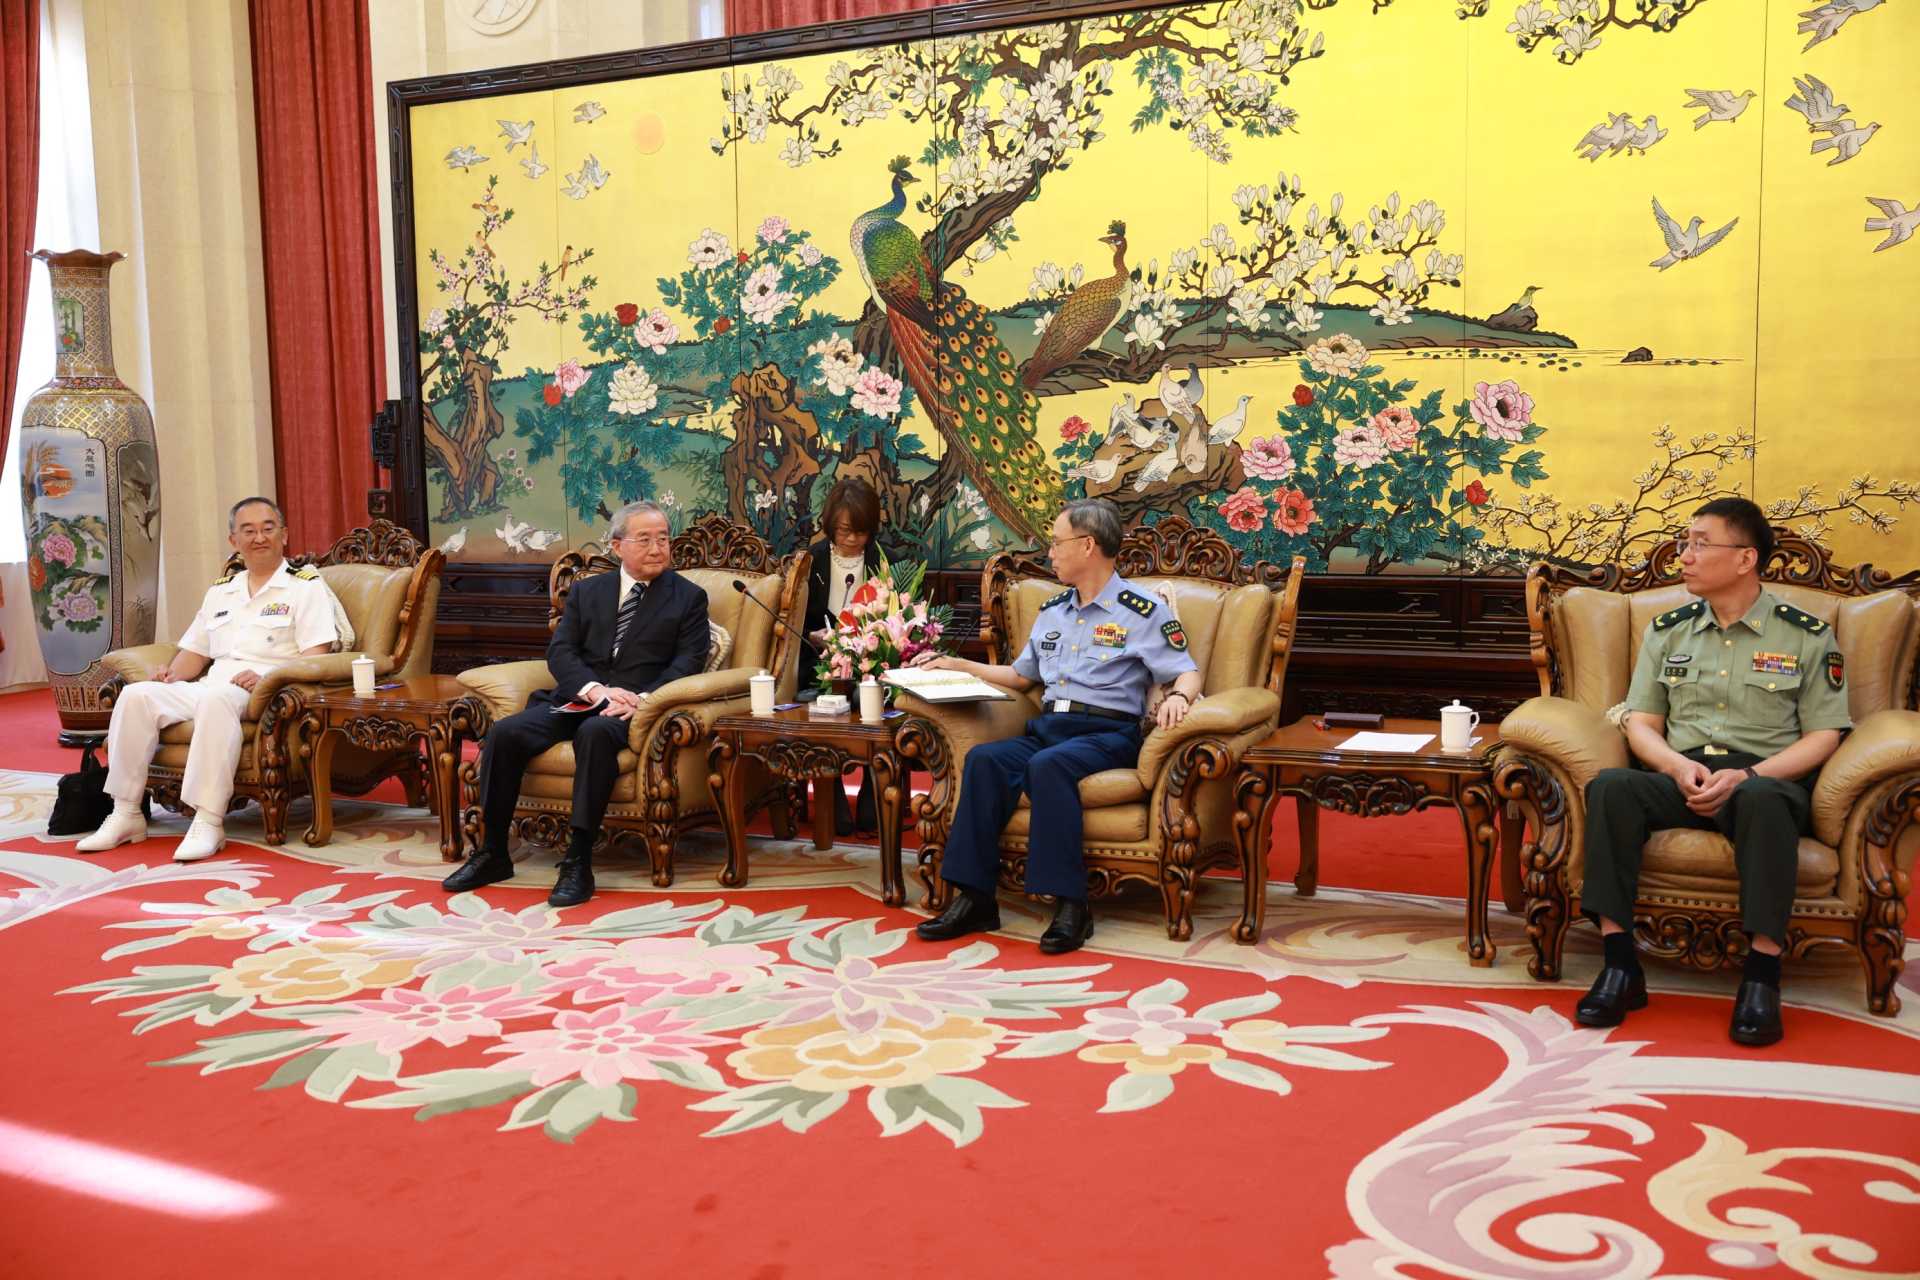 中国中央軍事委員会統合参謀部景建峰副参謀長の表敬訪問（７月17日）